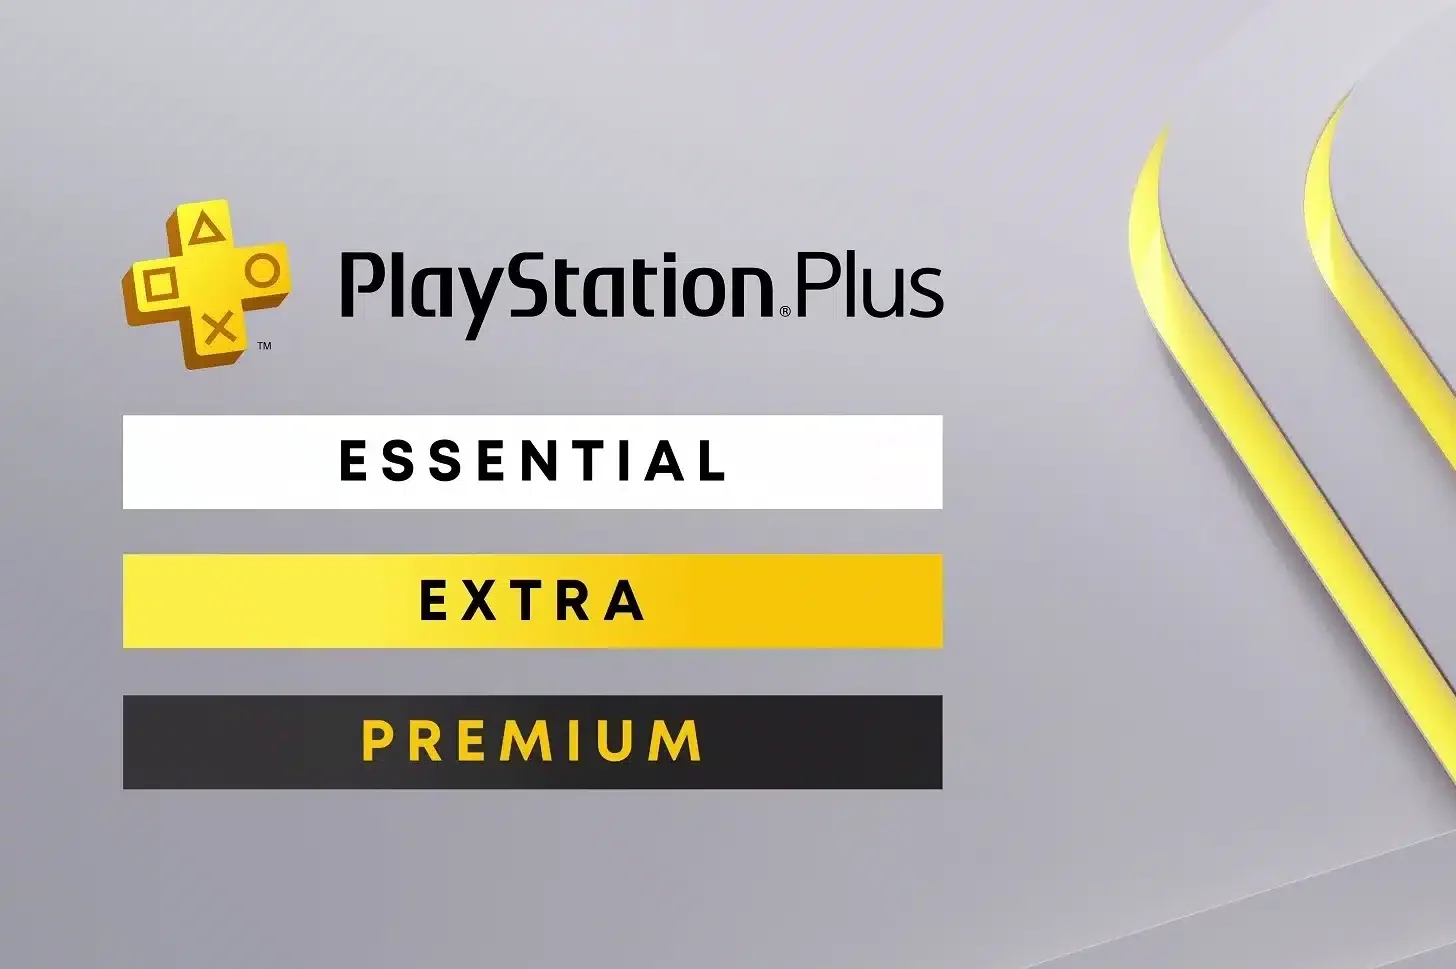 Ultima occasione per rinnovare PlayStation Plus, ecco quando avverrà l'aumento di prezzo